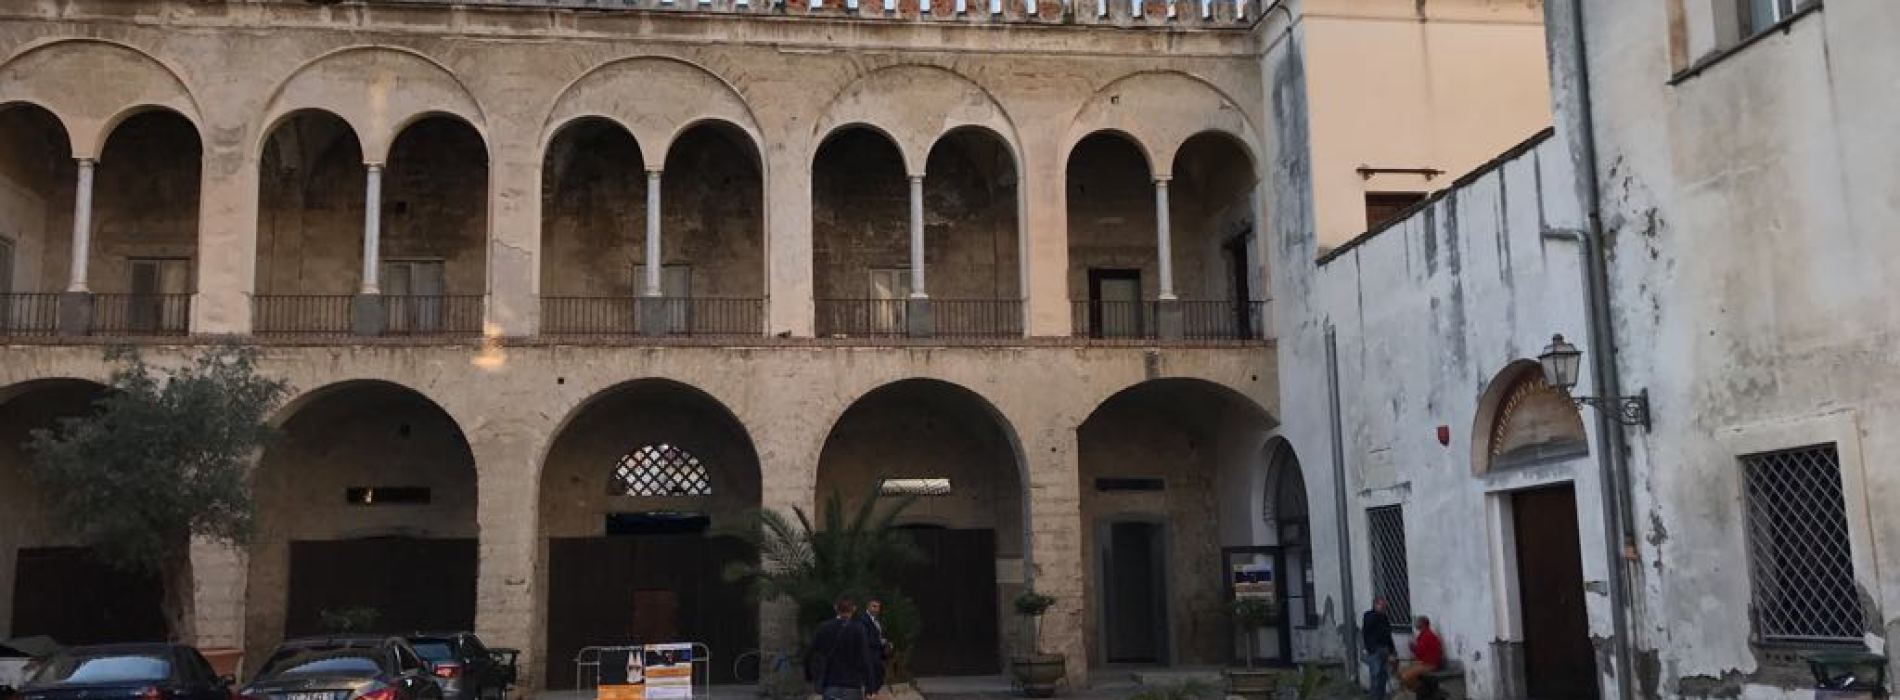 Sant’Arpino. Gli eventi culturali nel Palazzo Sanchez de Luna